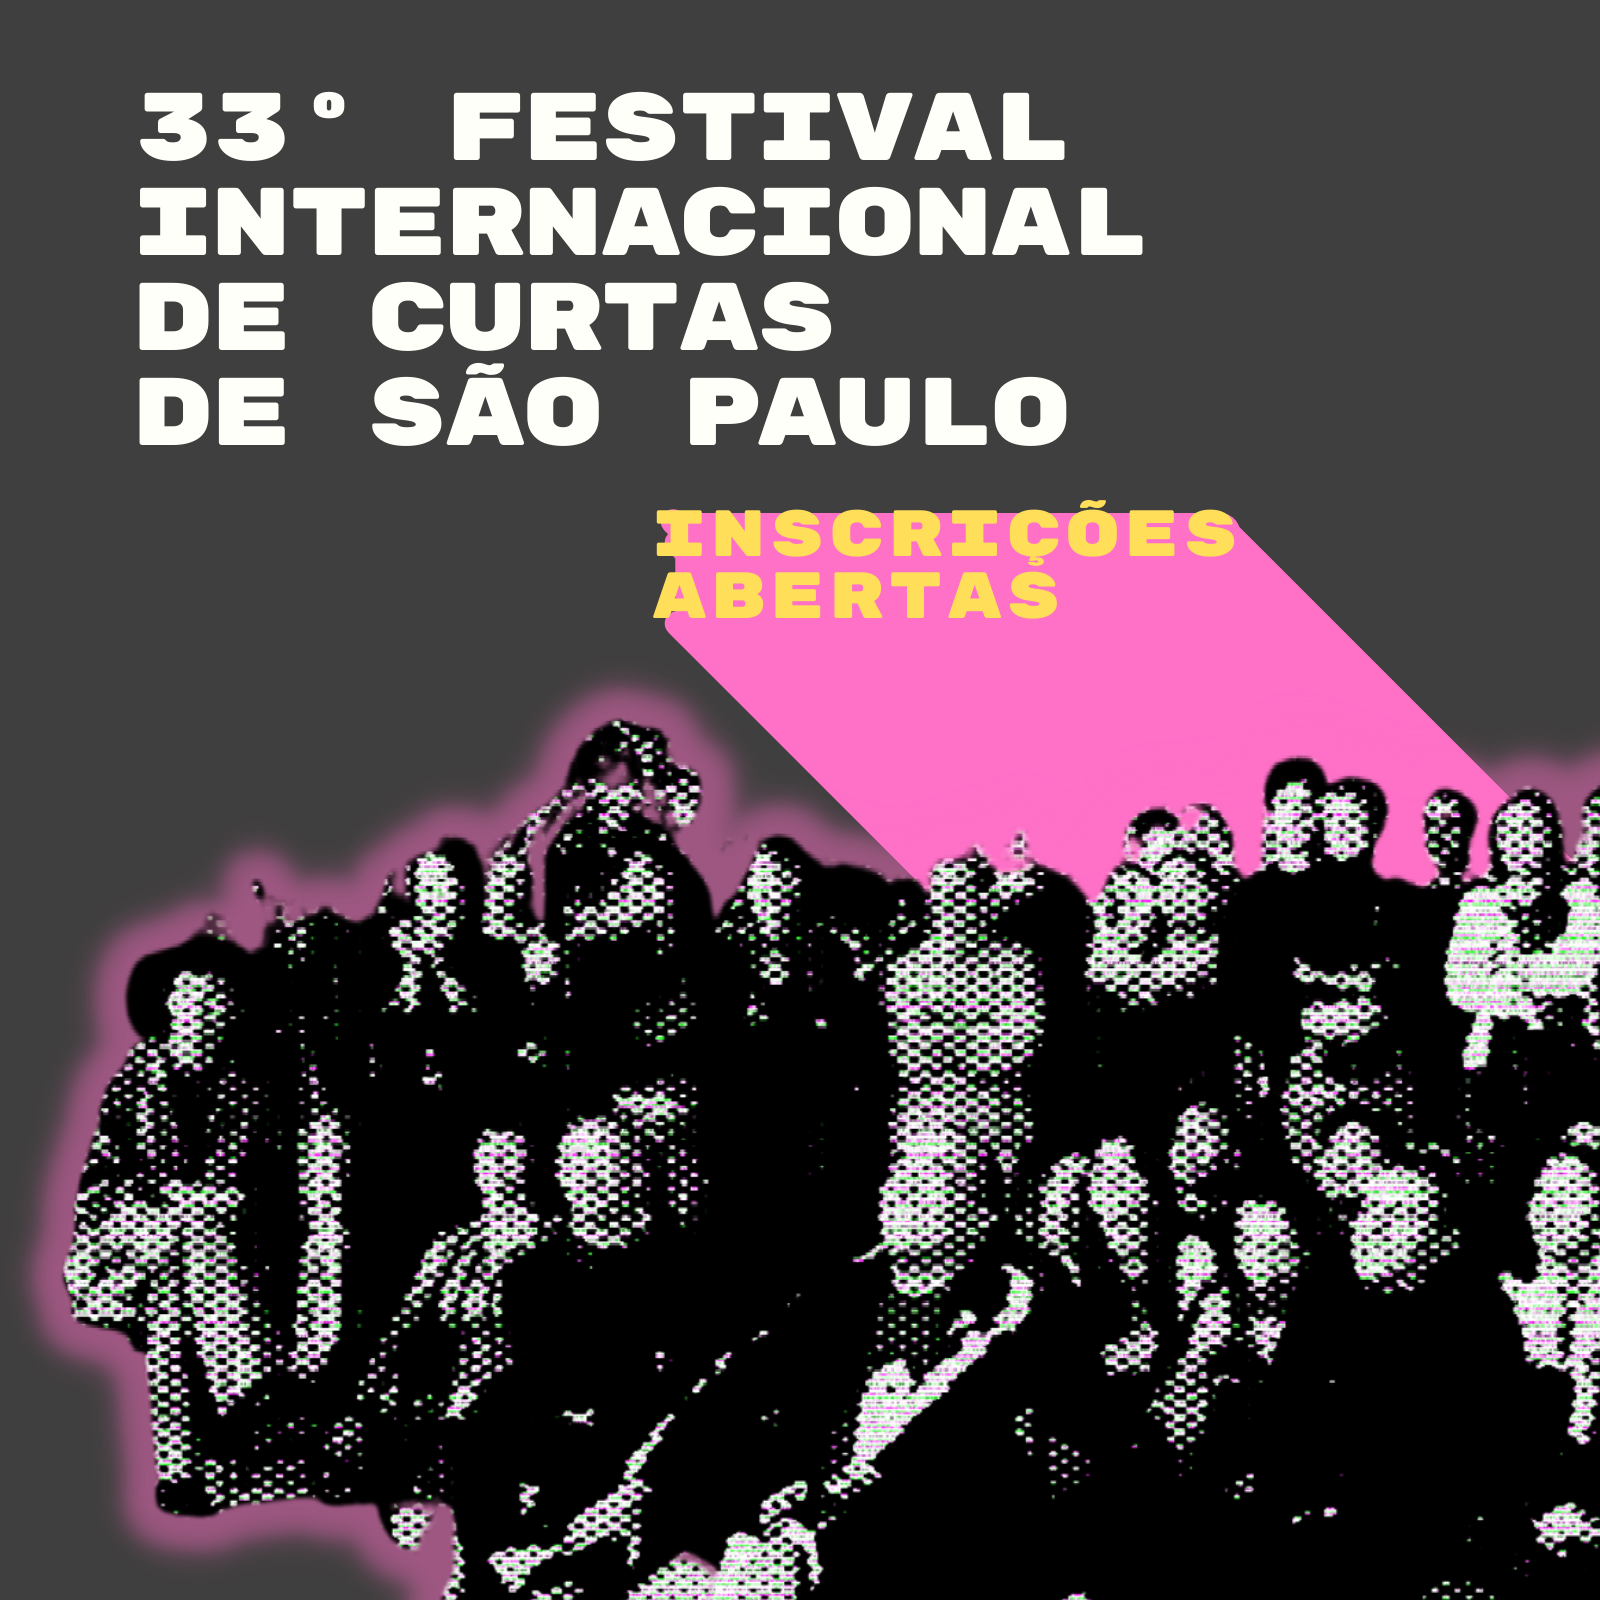 33º FESTIVAL INTERNACIONAL DE CURTAS DE SÃO PAULO – CURTA KINOFORUM ESTA COM INSCRIÇÕES ABERTAS ATE 31/03